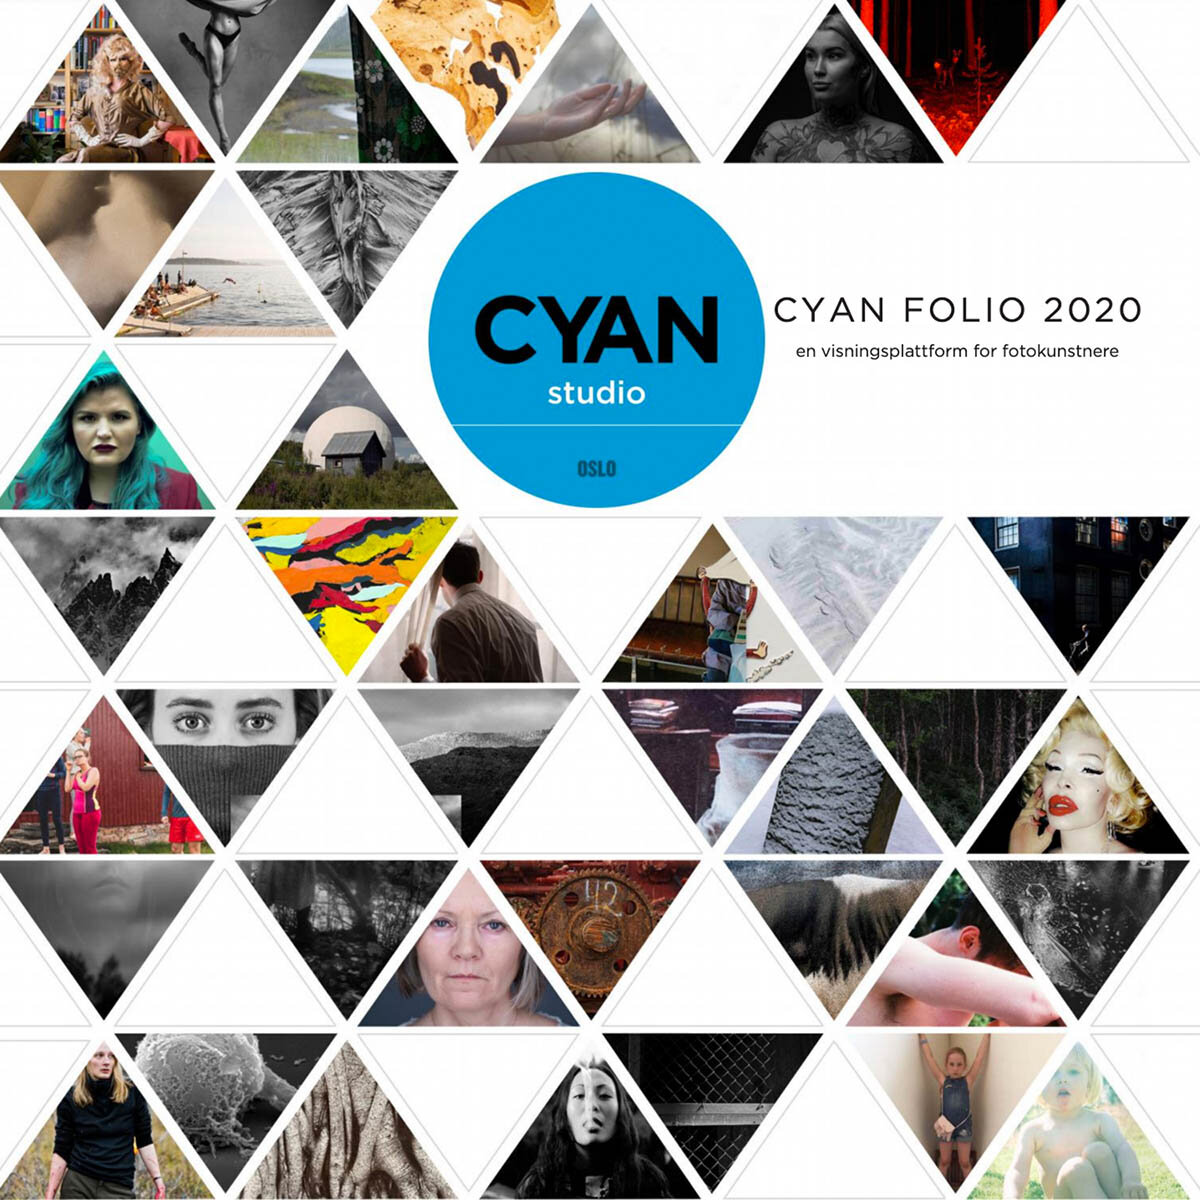 cyanfolio2020-katalog.jpg